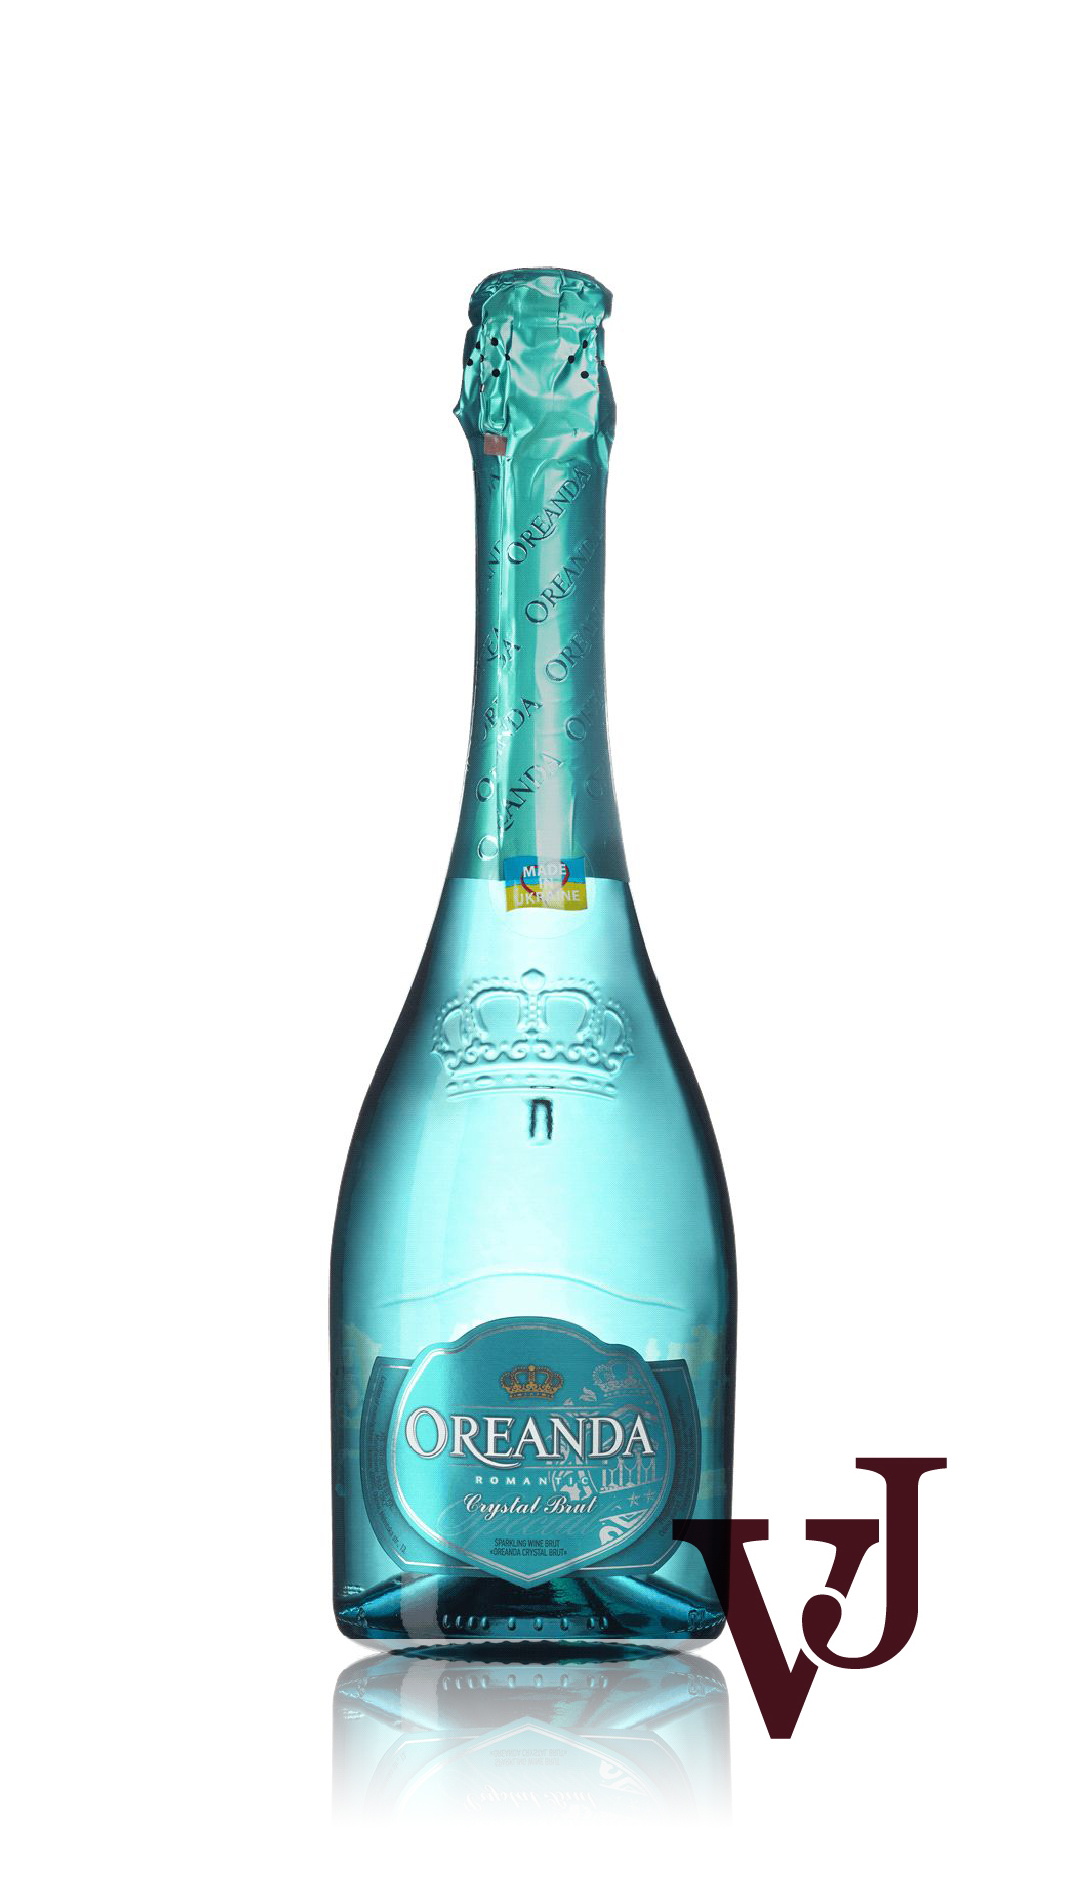 Mousserande Vin - Oreanda Crystal Brut artikel nummer 5895901 från producenten Odesa Brandy Fabrik AB från Ukraina.